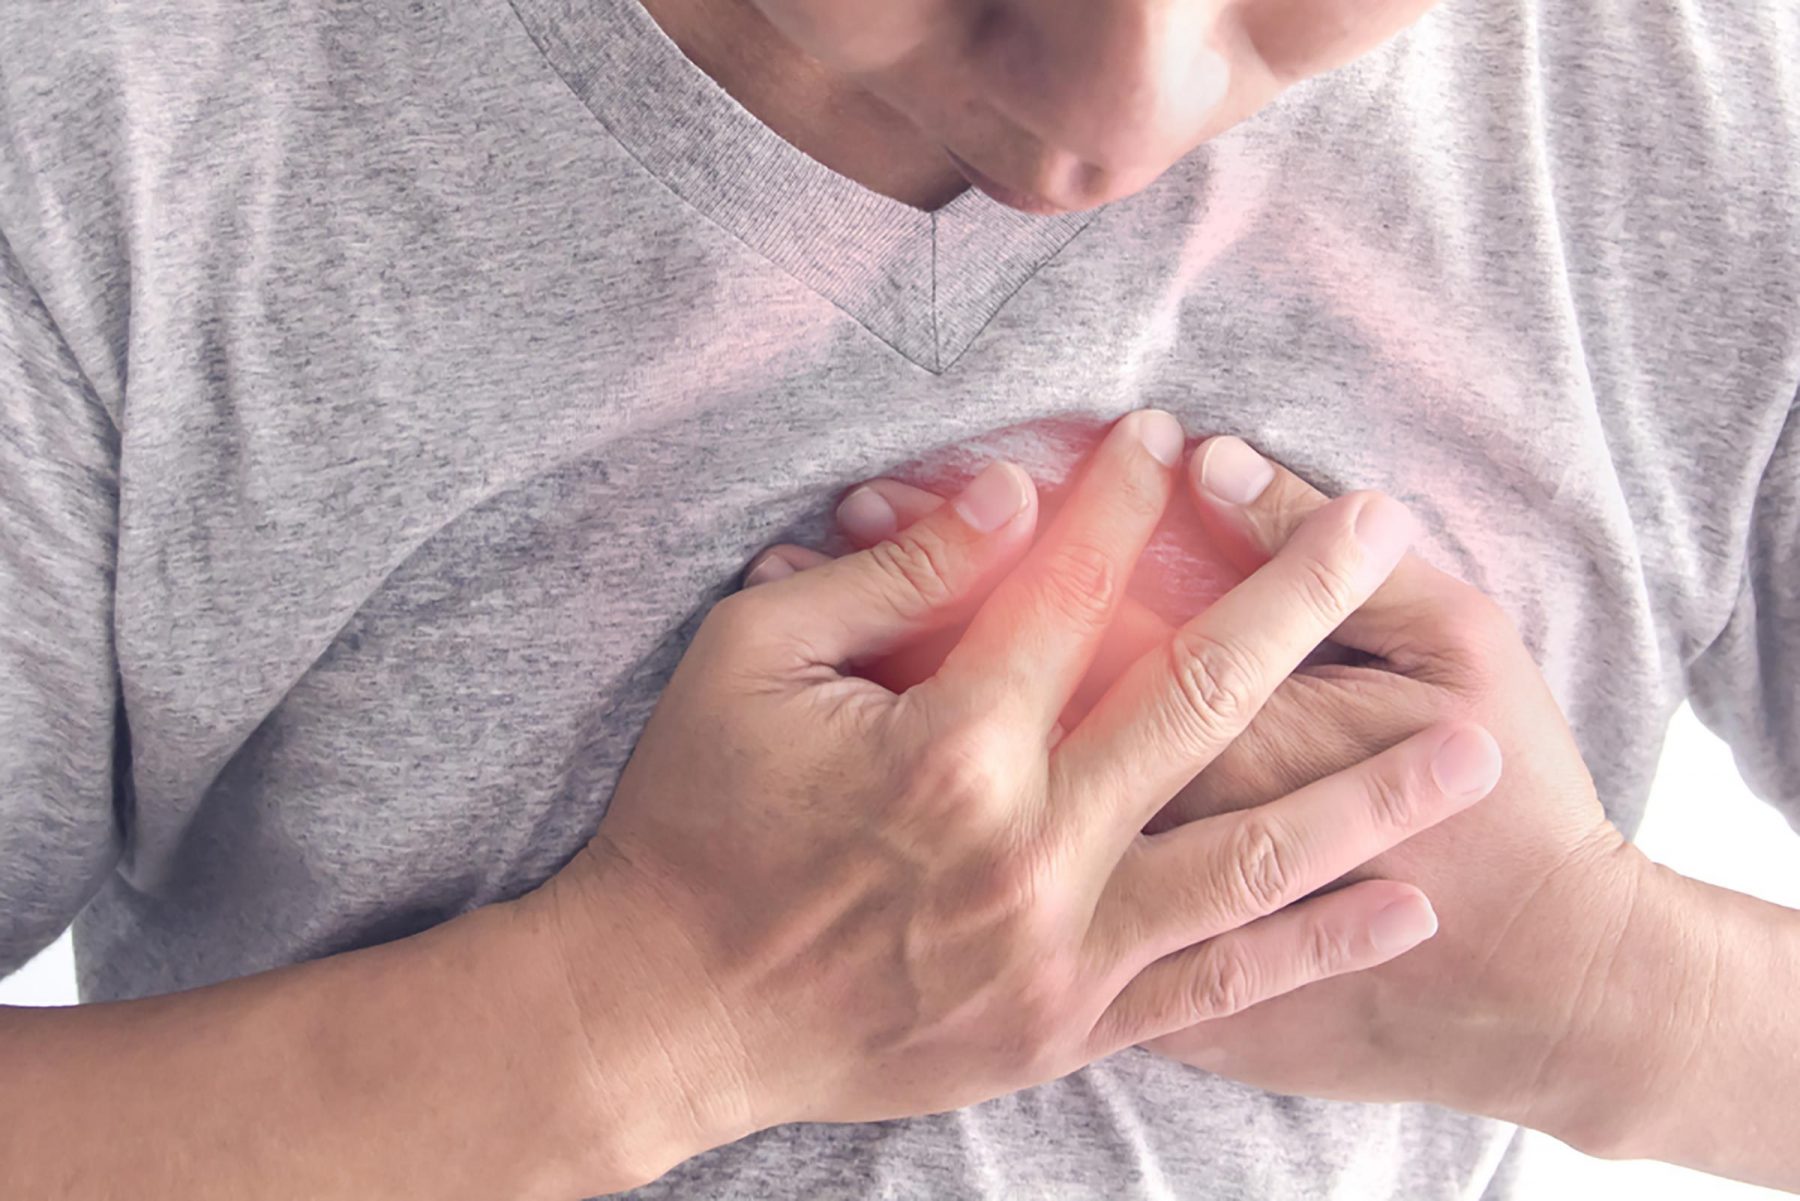 Δύσπνοια καρδιά: Προαναγγέλει χειρότερη έκβαση μετά την καρδιακή προσβολή